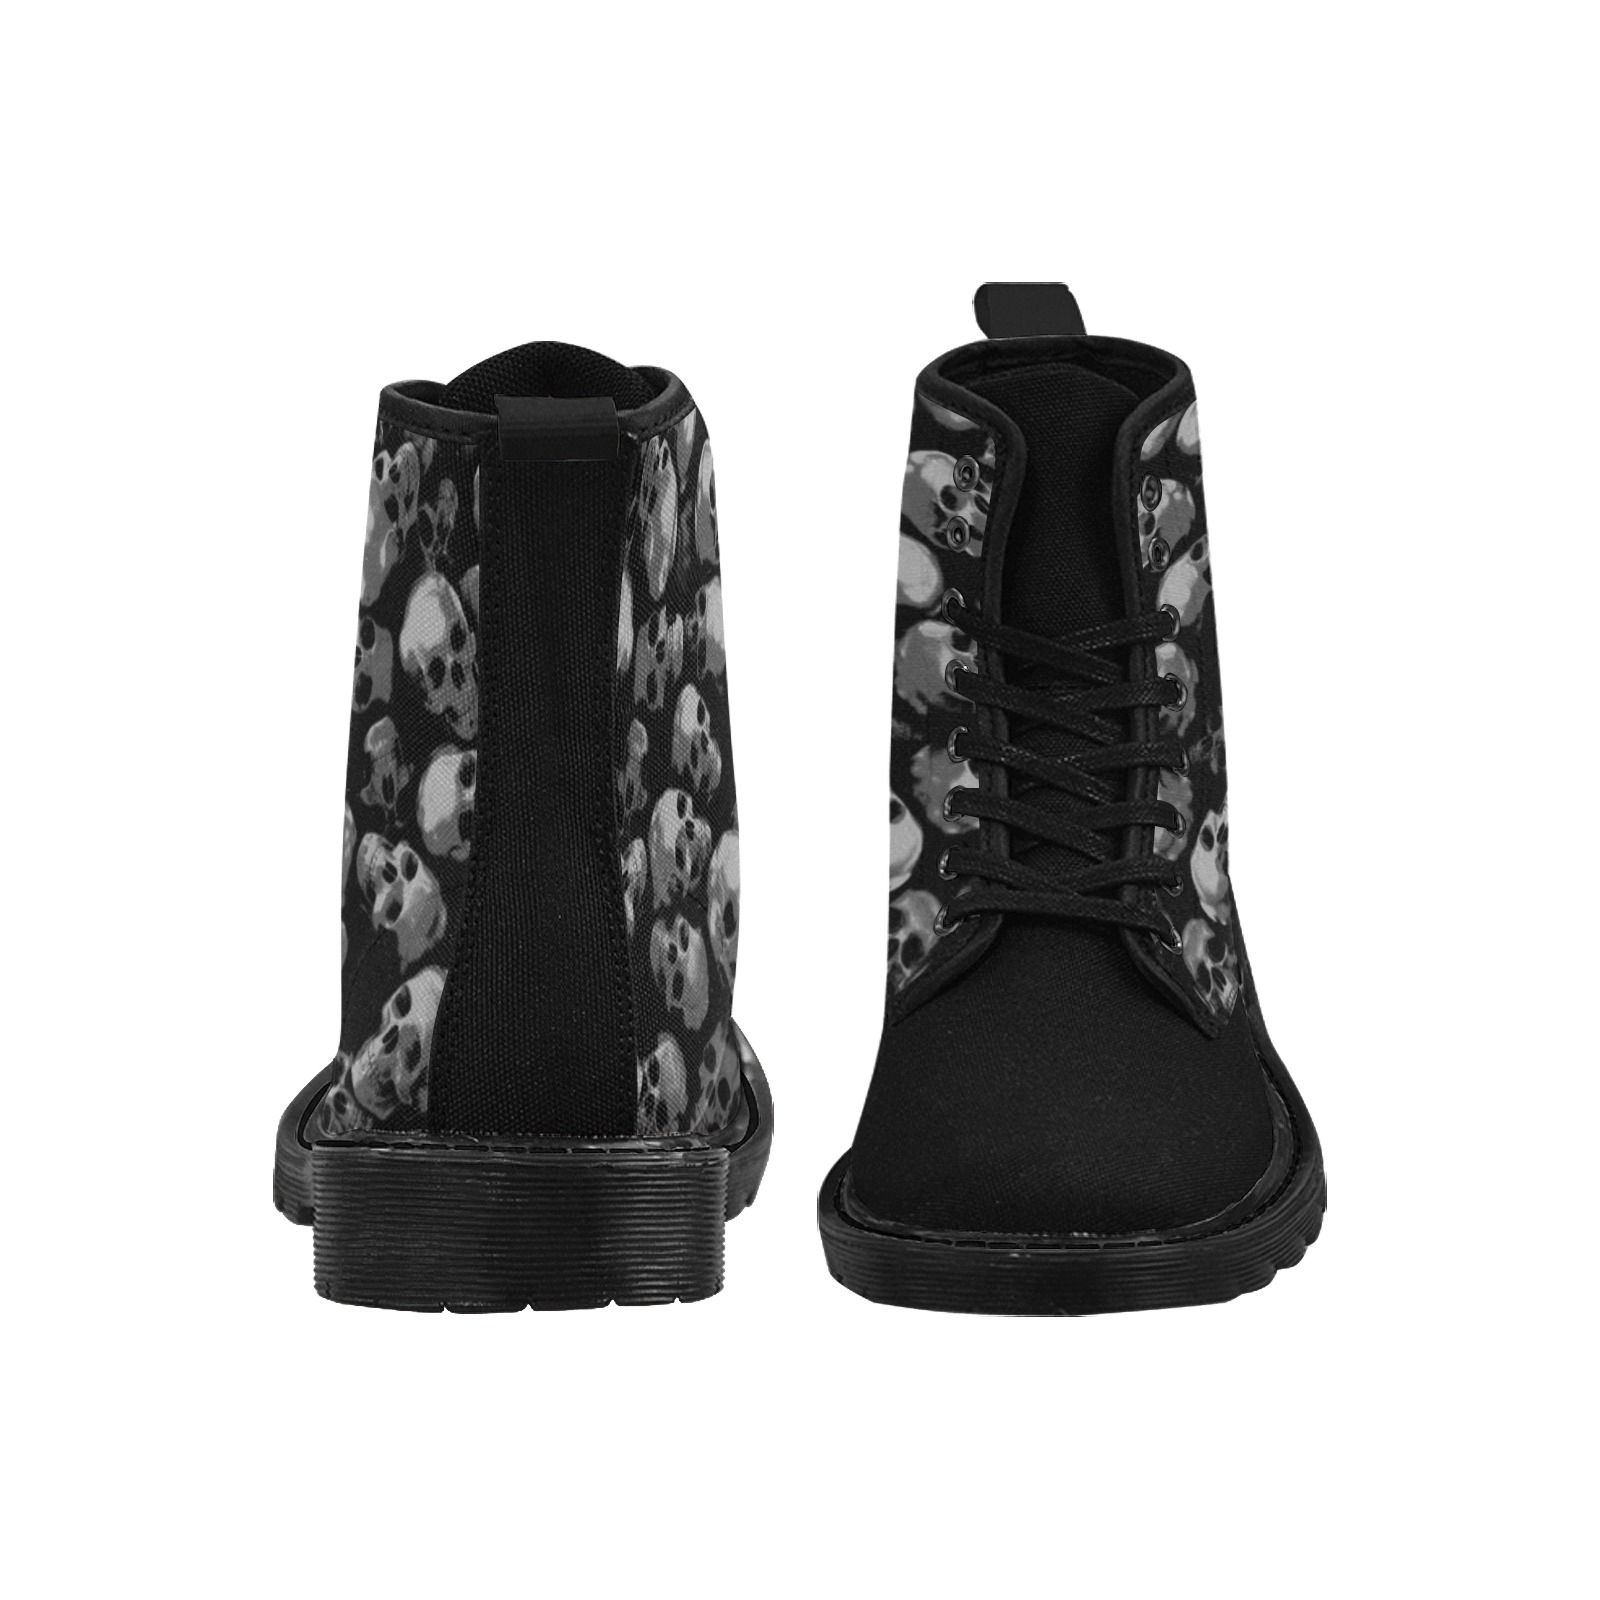 SKULLS - GRAY Martin Boots for Women (Black) (Model 1203H)